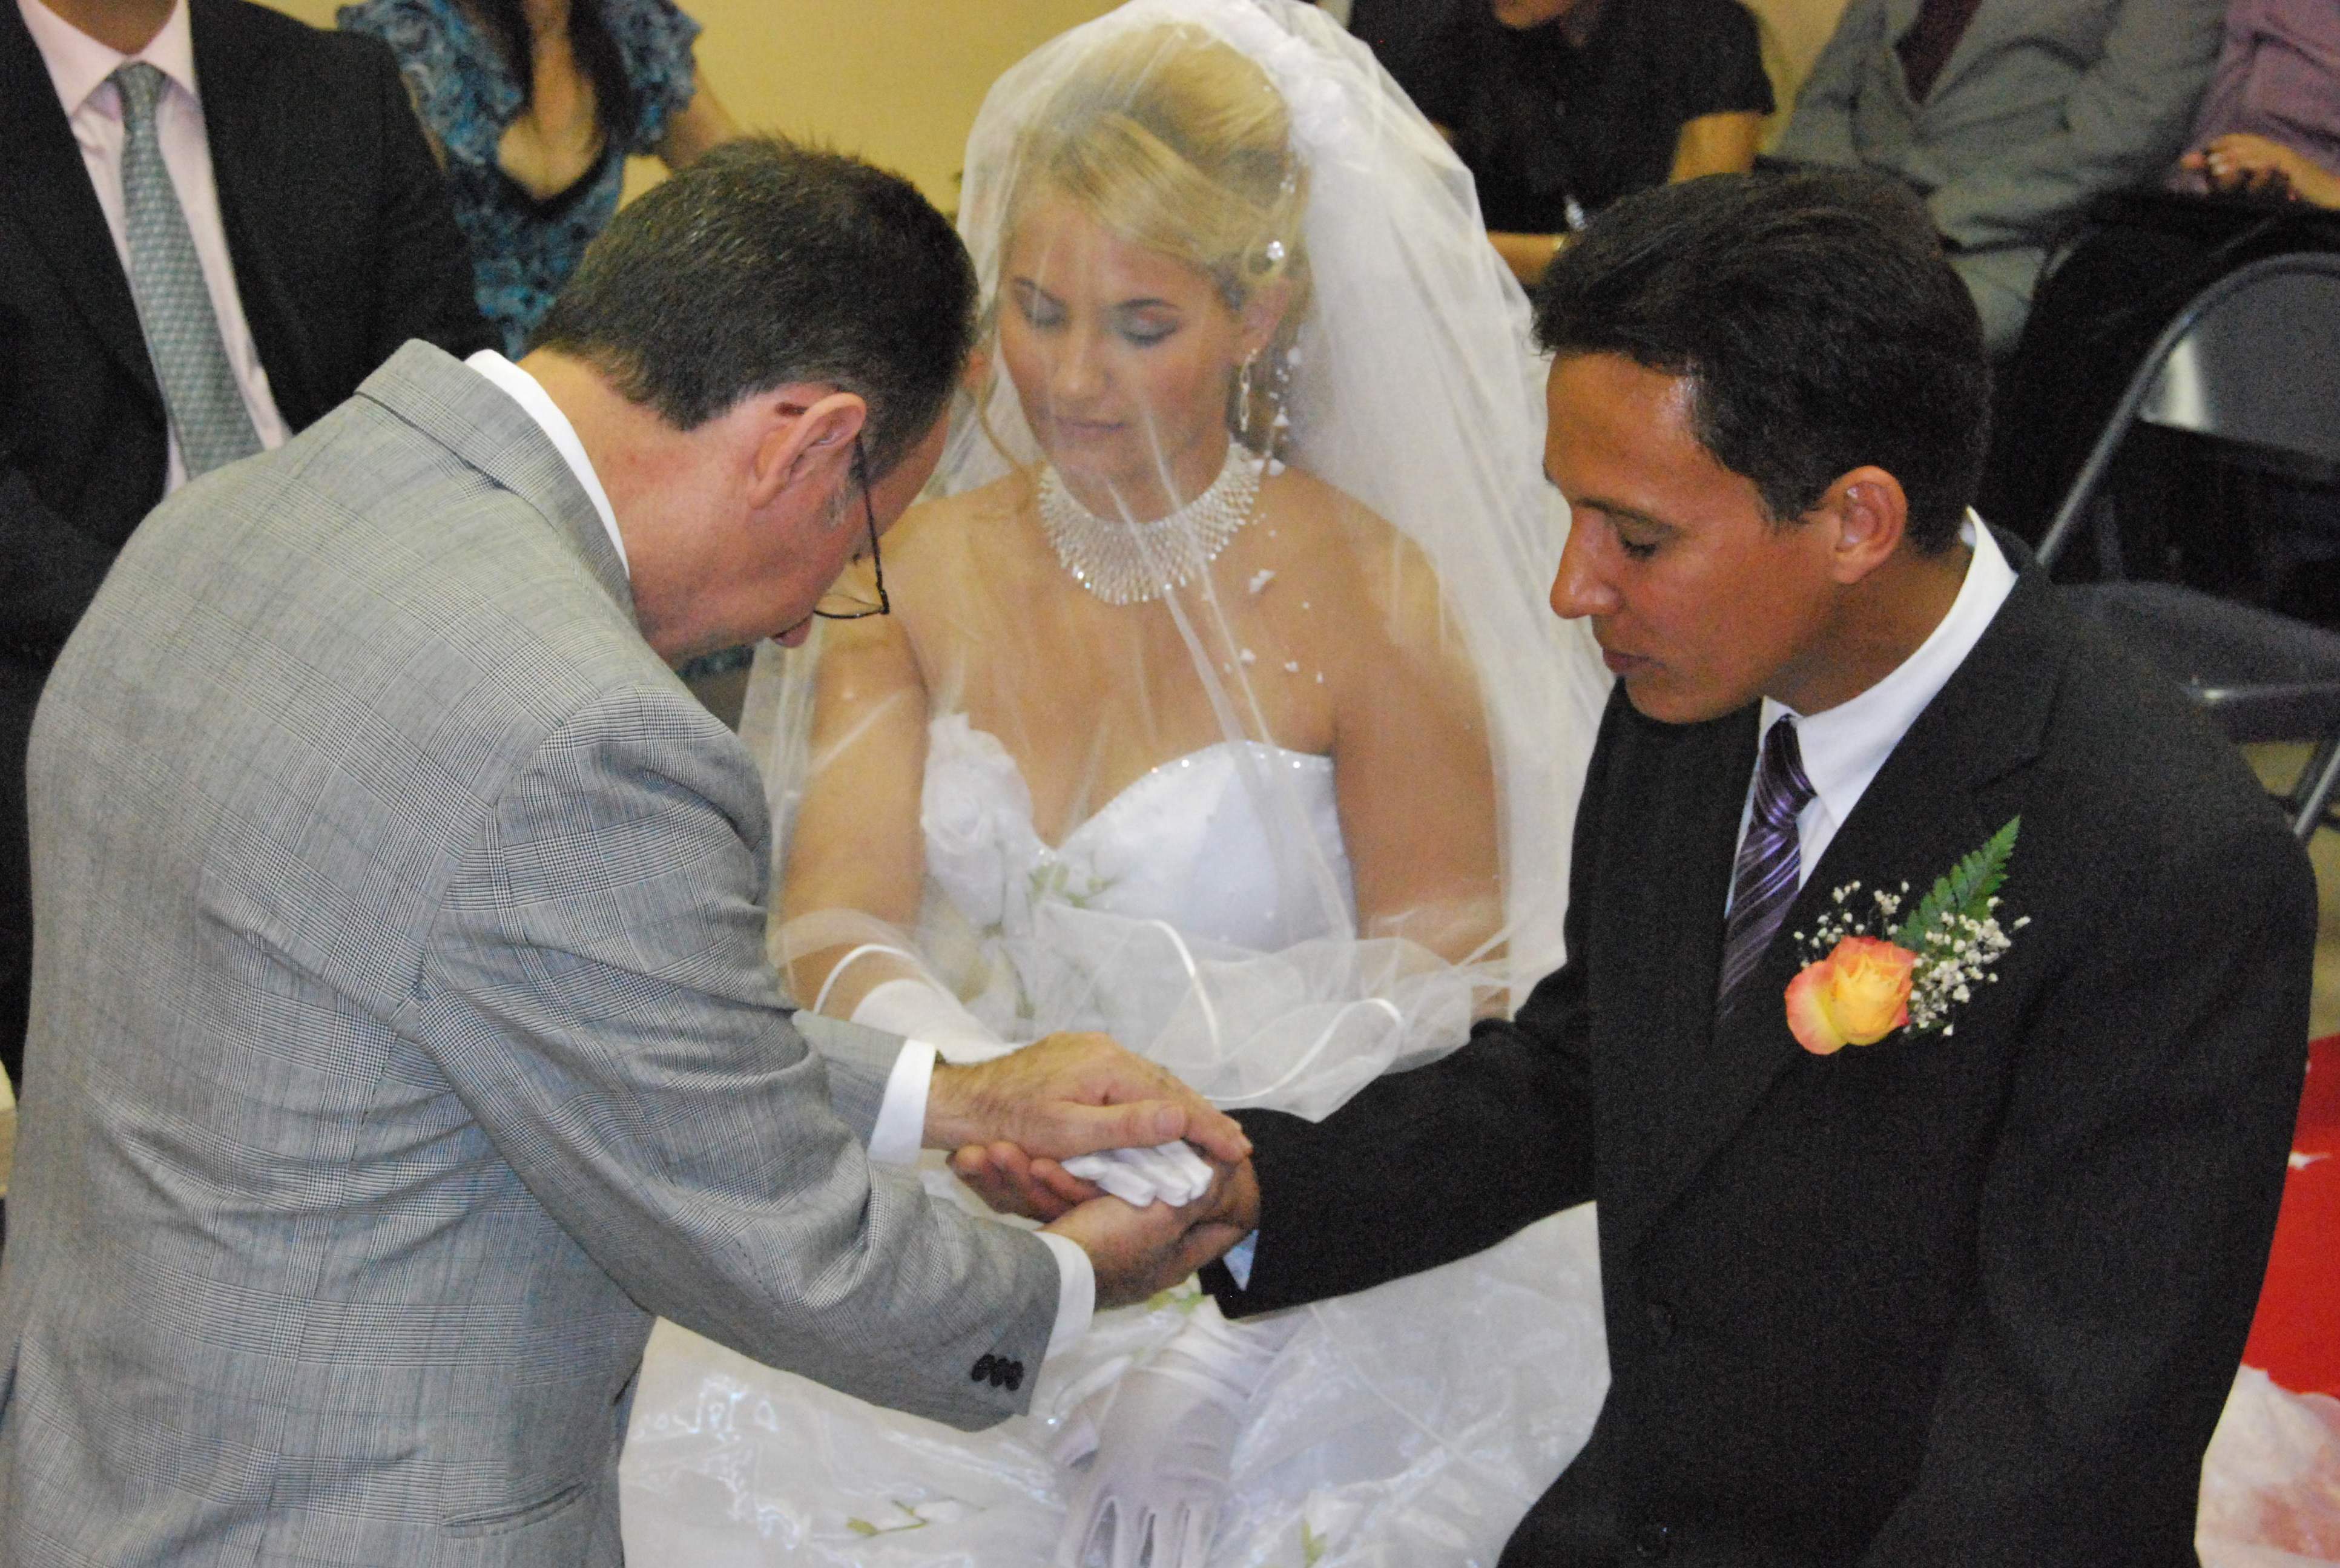 Qué es el vestido de bodas que el invitado no llevaba puesto? – Comunion  Internacional de la Gracia